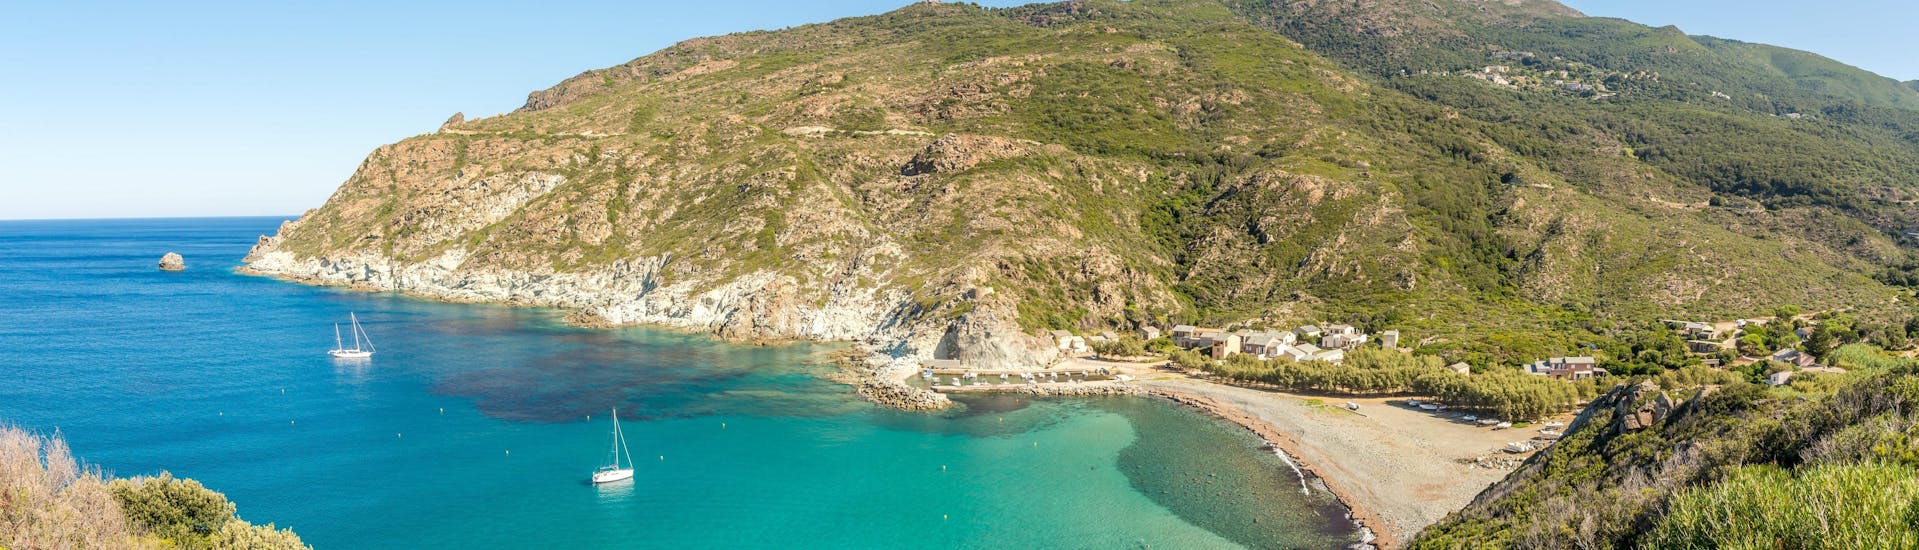 Panoramablick auf die wilde Küste von Oberkorsika (Haute Corse), ein wunderbares Gebiet, das man mit einer Bootstour erkunden kann. 